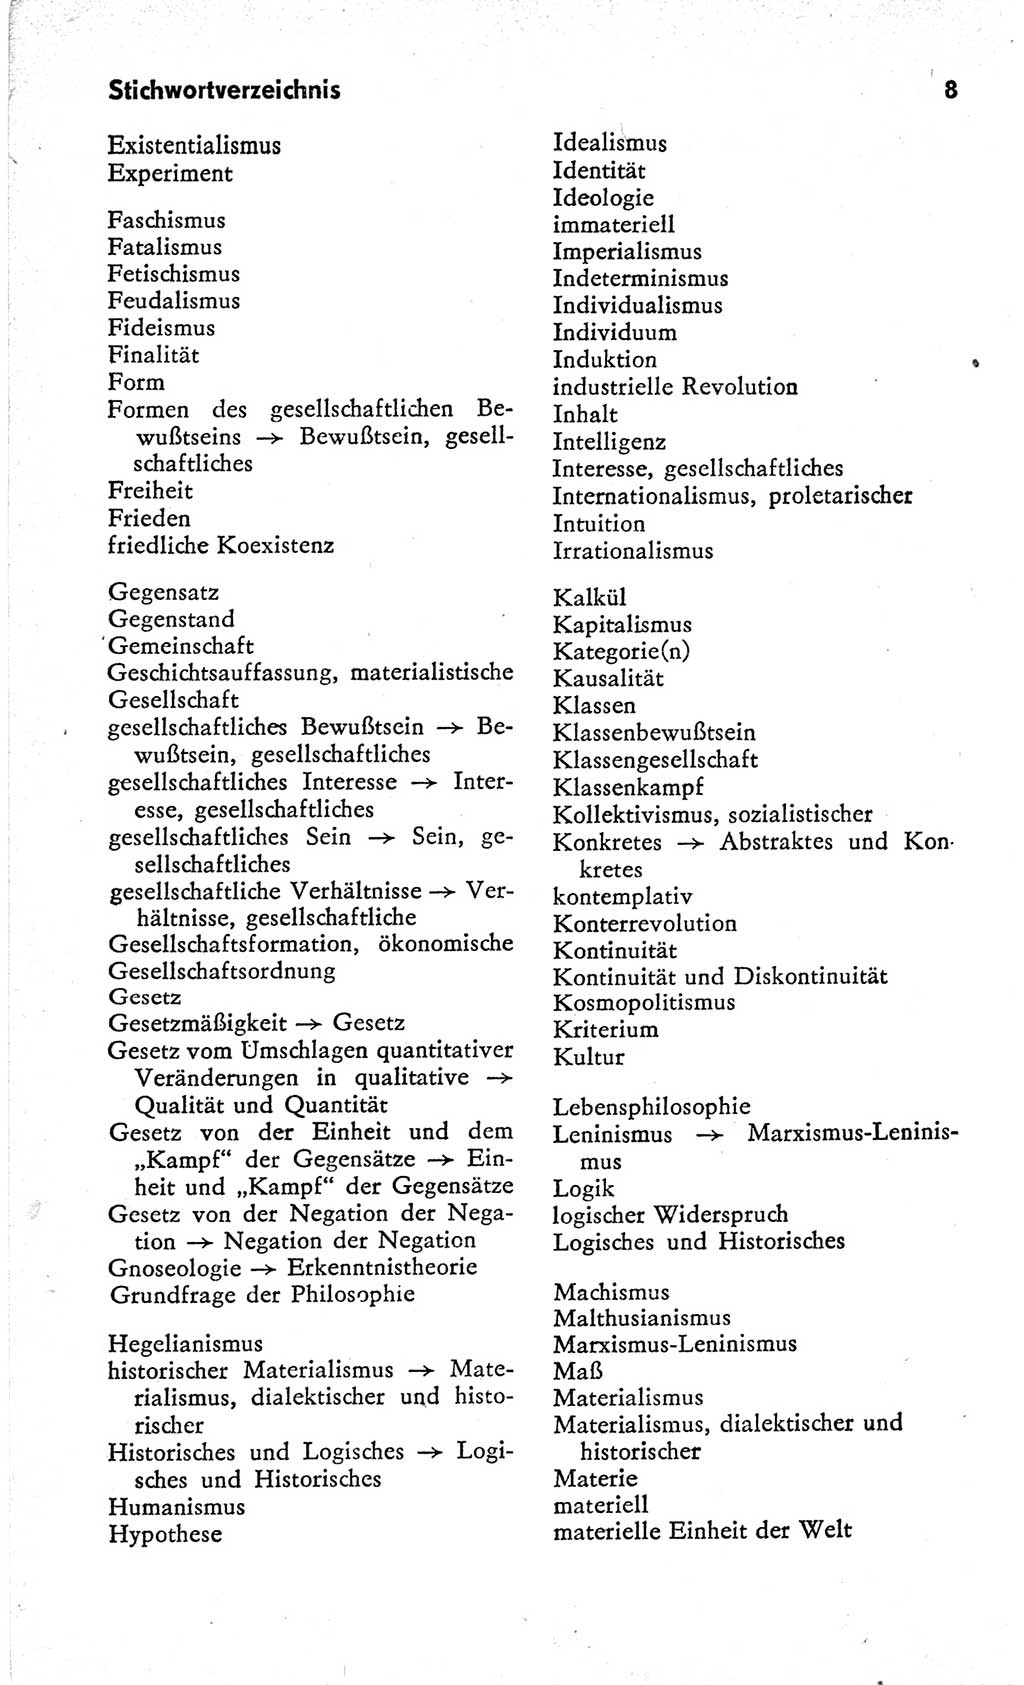 Kleines Wörterbuch der marxistisch-leninistischen Philosophie [Deutsche Demokratische Republik (DDR)] 1966, Seite 8 (Kl. Wb. ML Phil. DDR 1966, S. 8)